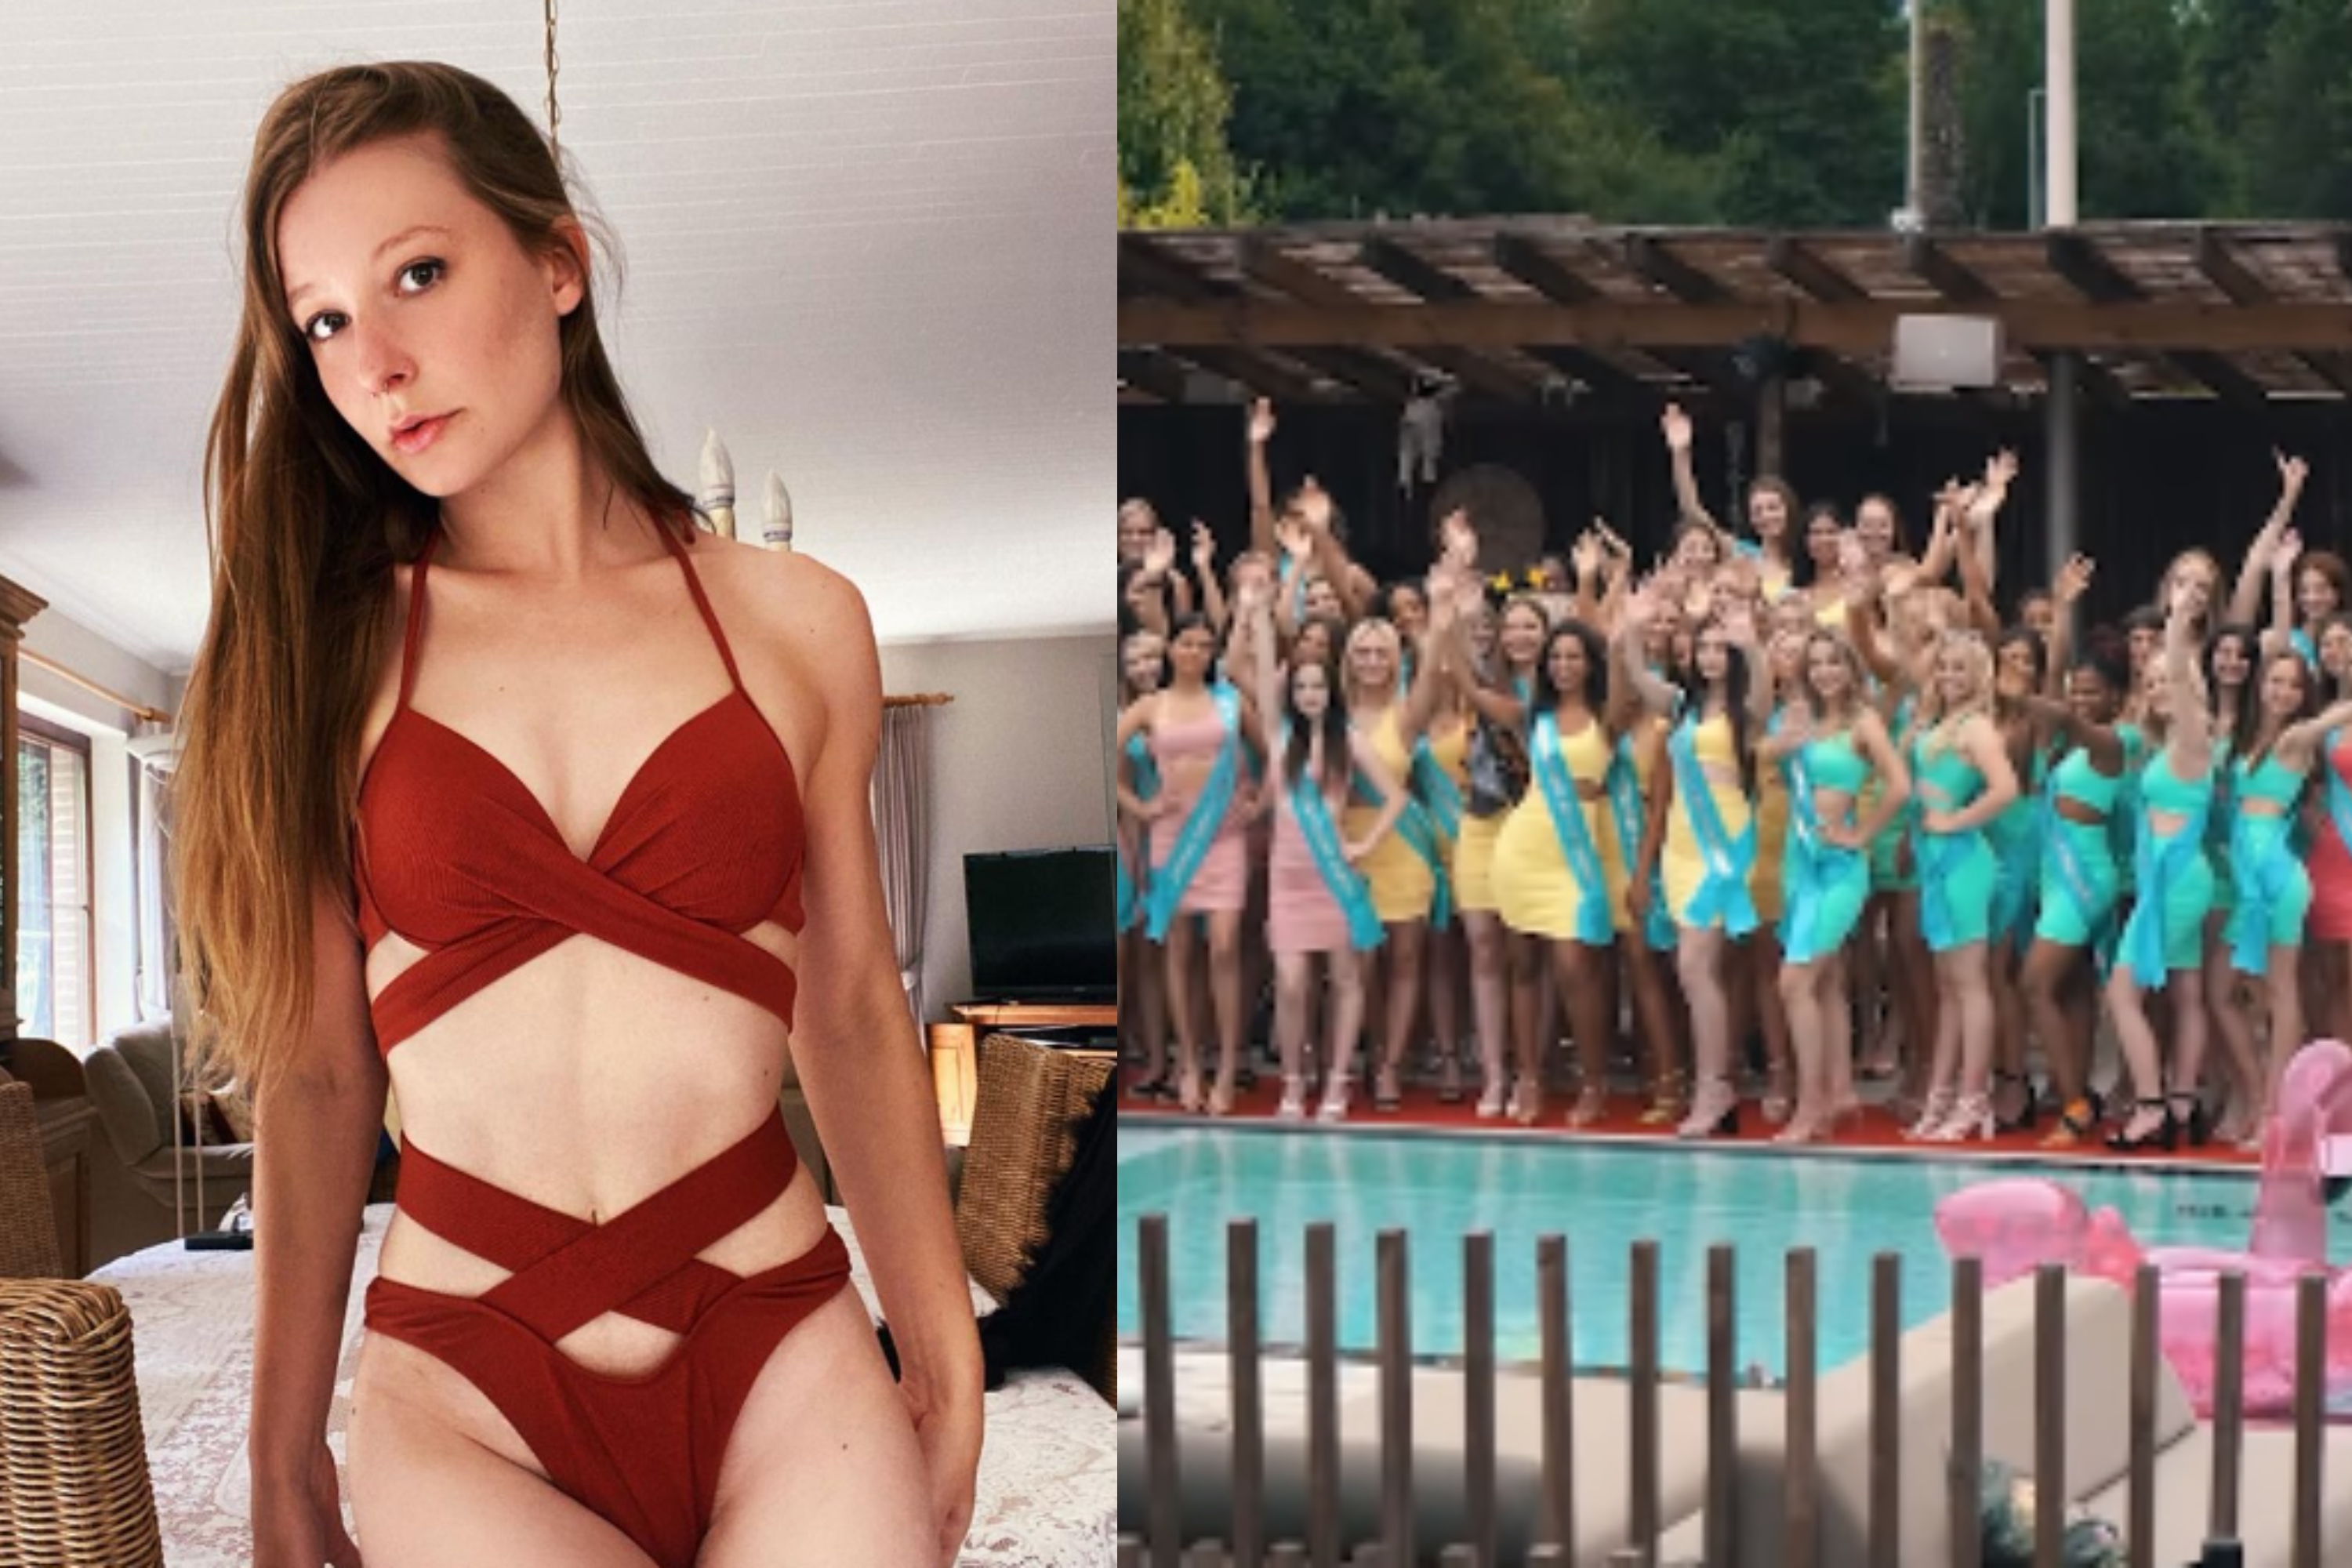 Une candidate à Miss Belgique propose des photos dénudées en échange de votes, lorganisation du concours va réagir image